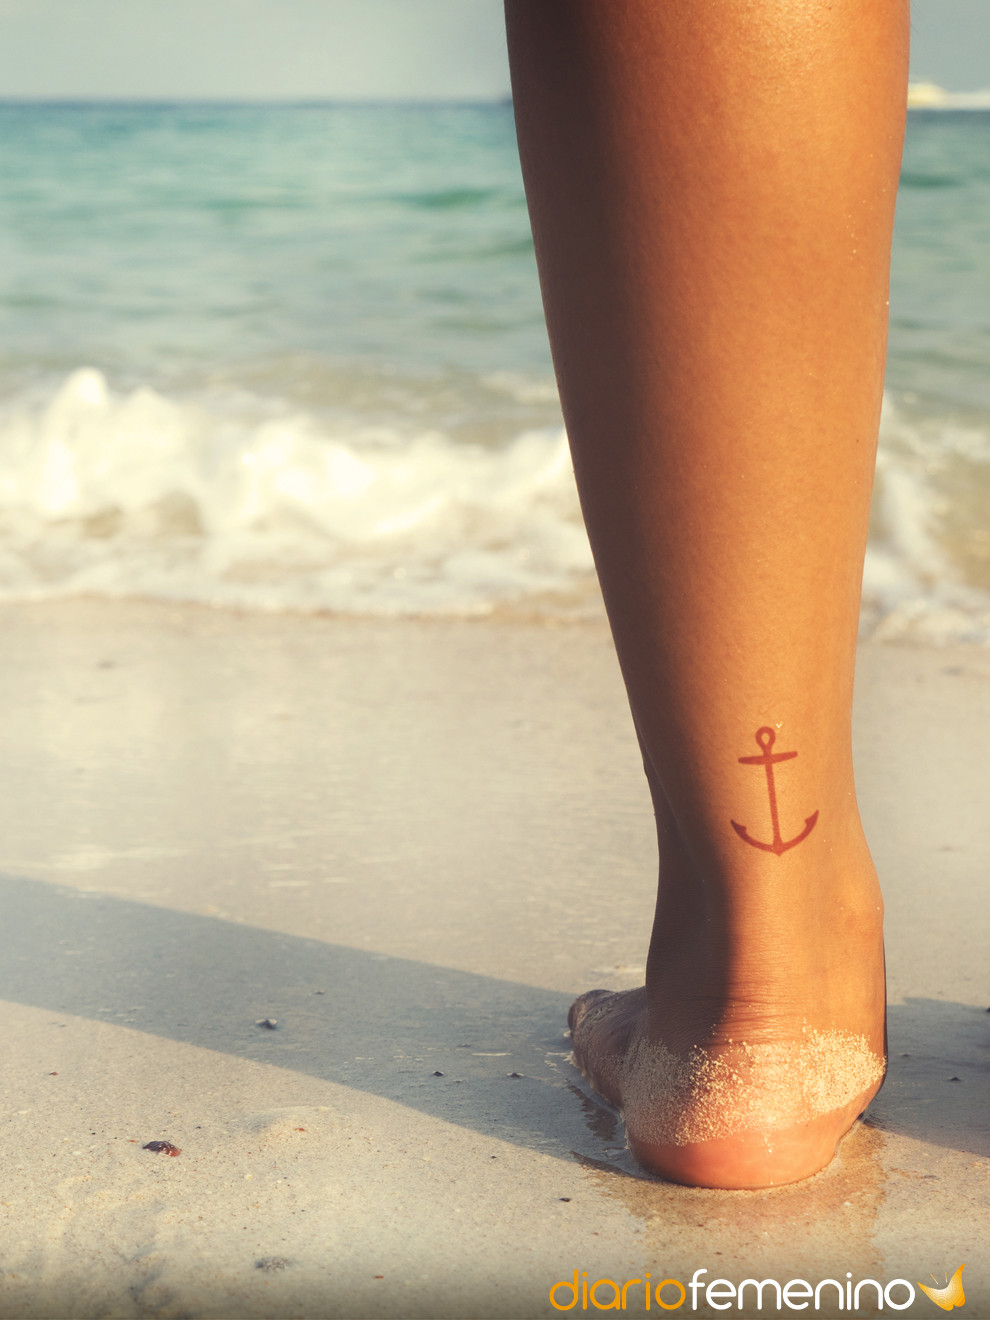 Ir a la playa o piscina tras hacerse un tatuaje: riesgos y precauciones